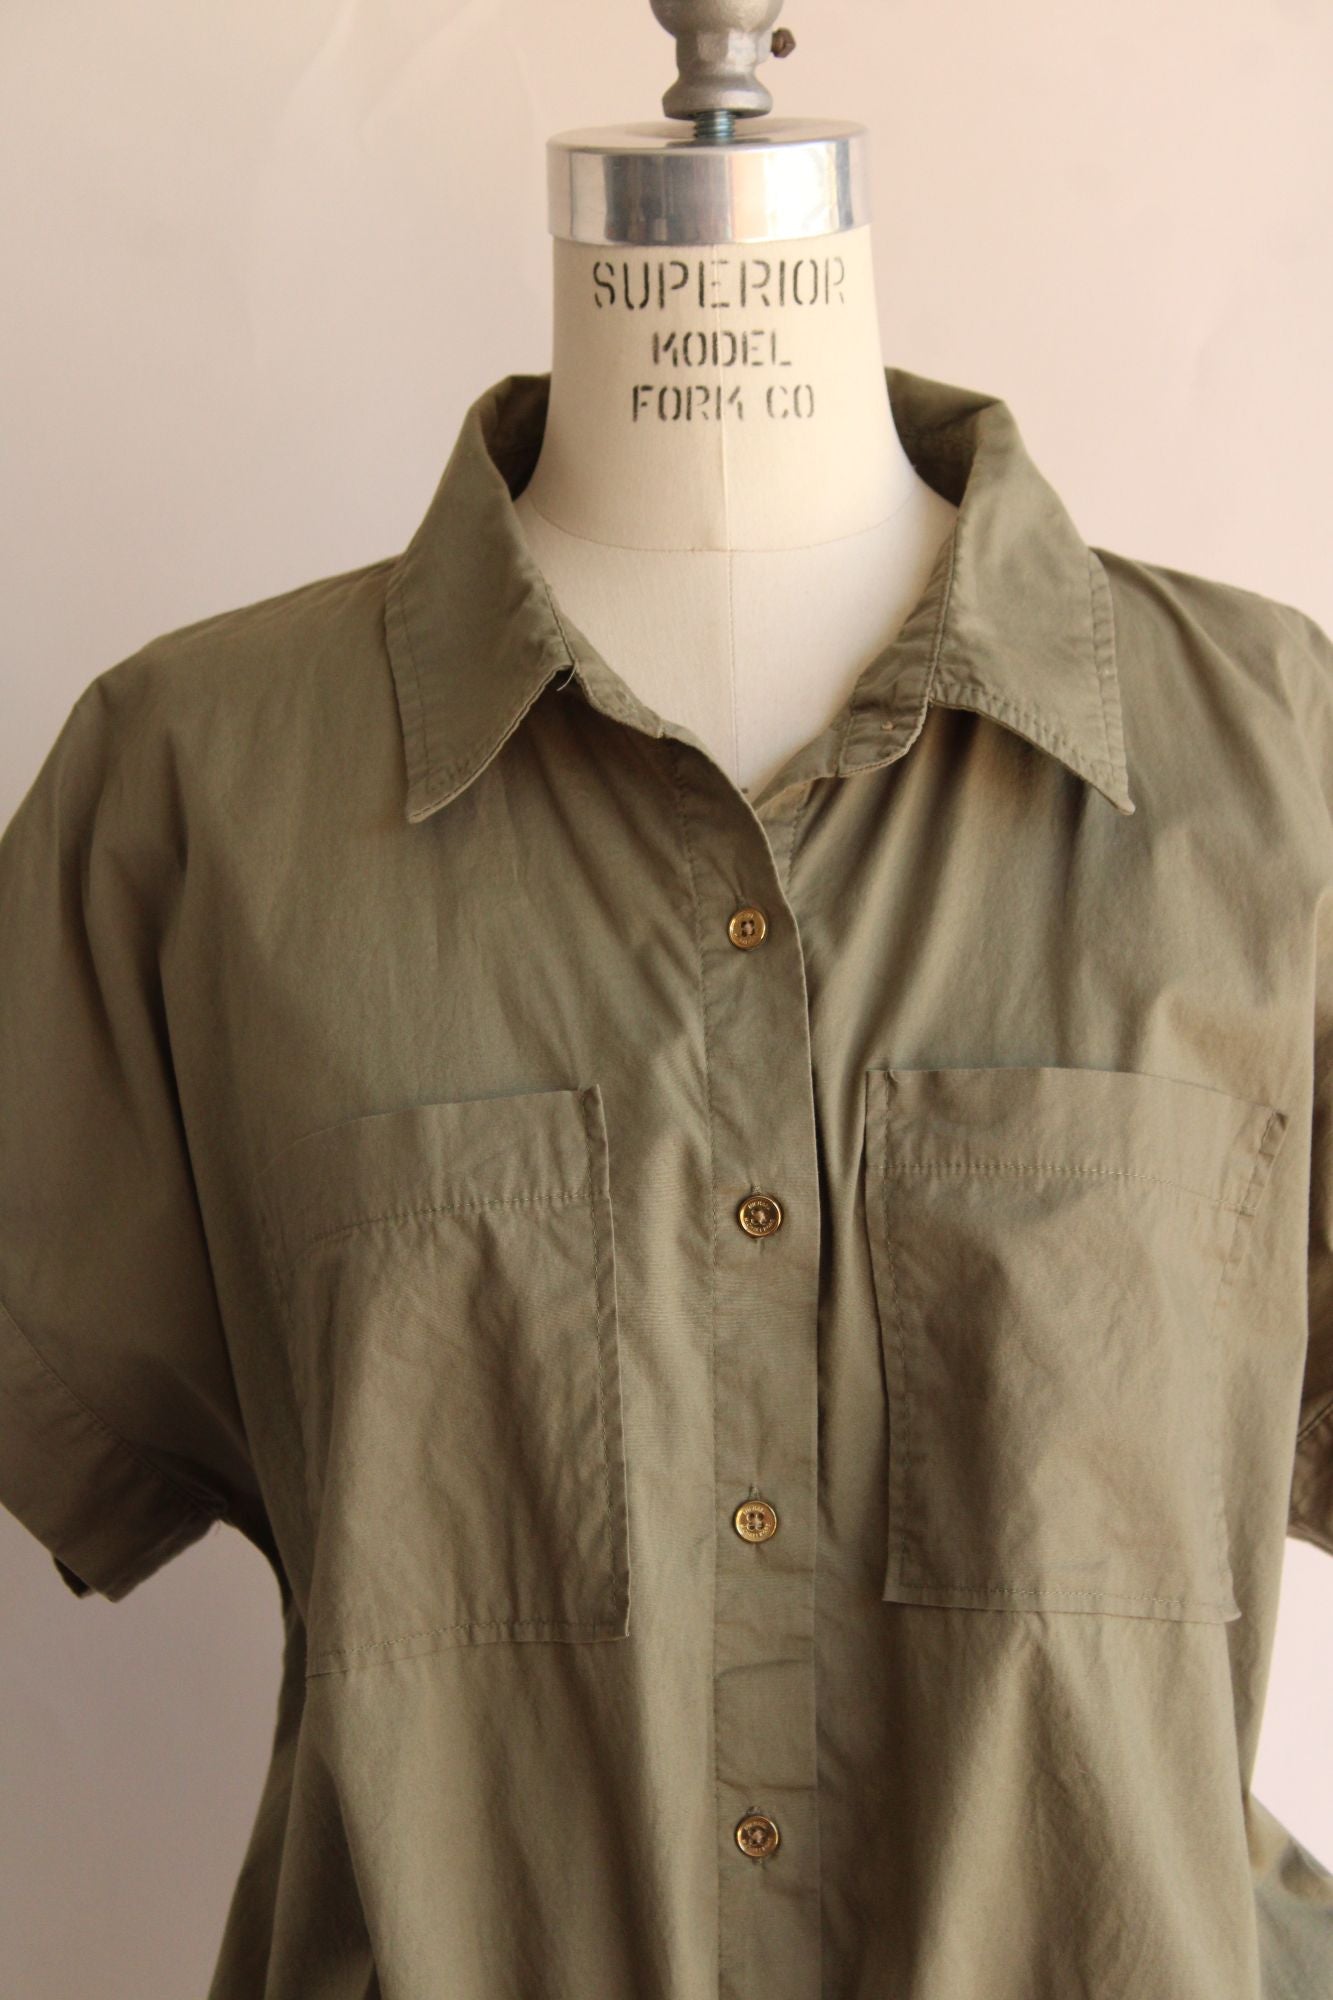 Michael Kors Womens Shirt, Size XL, Khaki Green Crop Top with Drawstring Waist